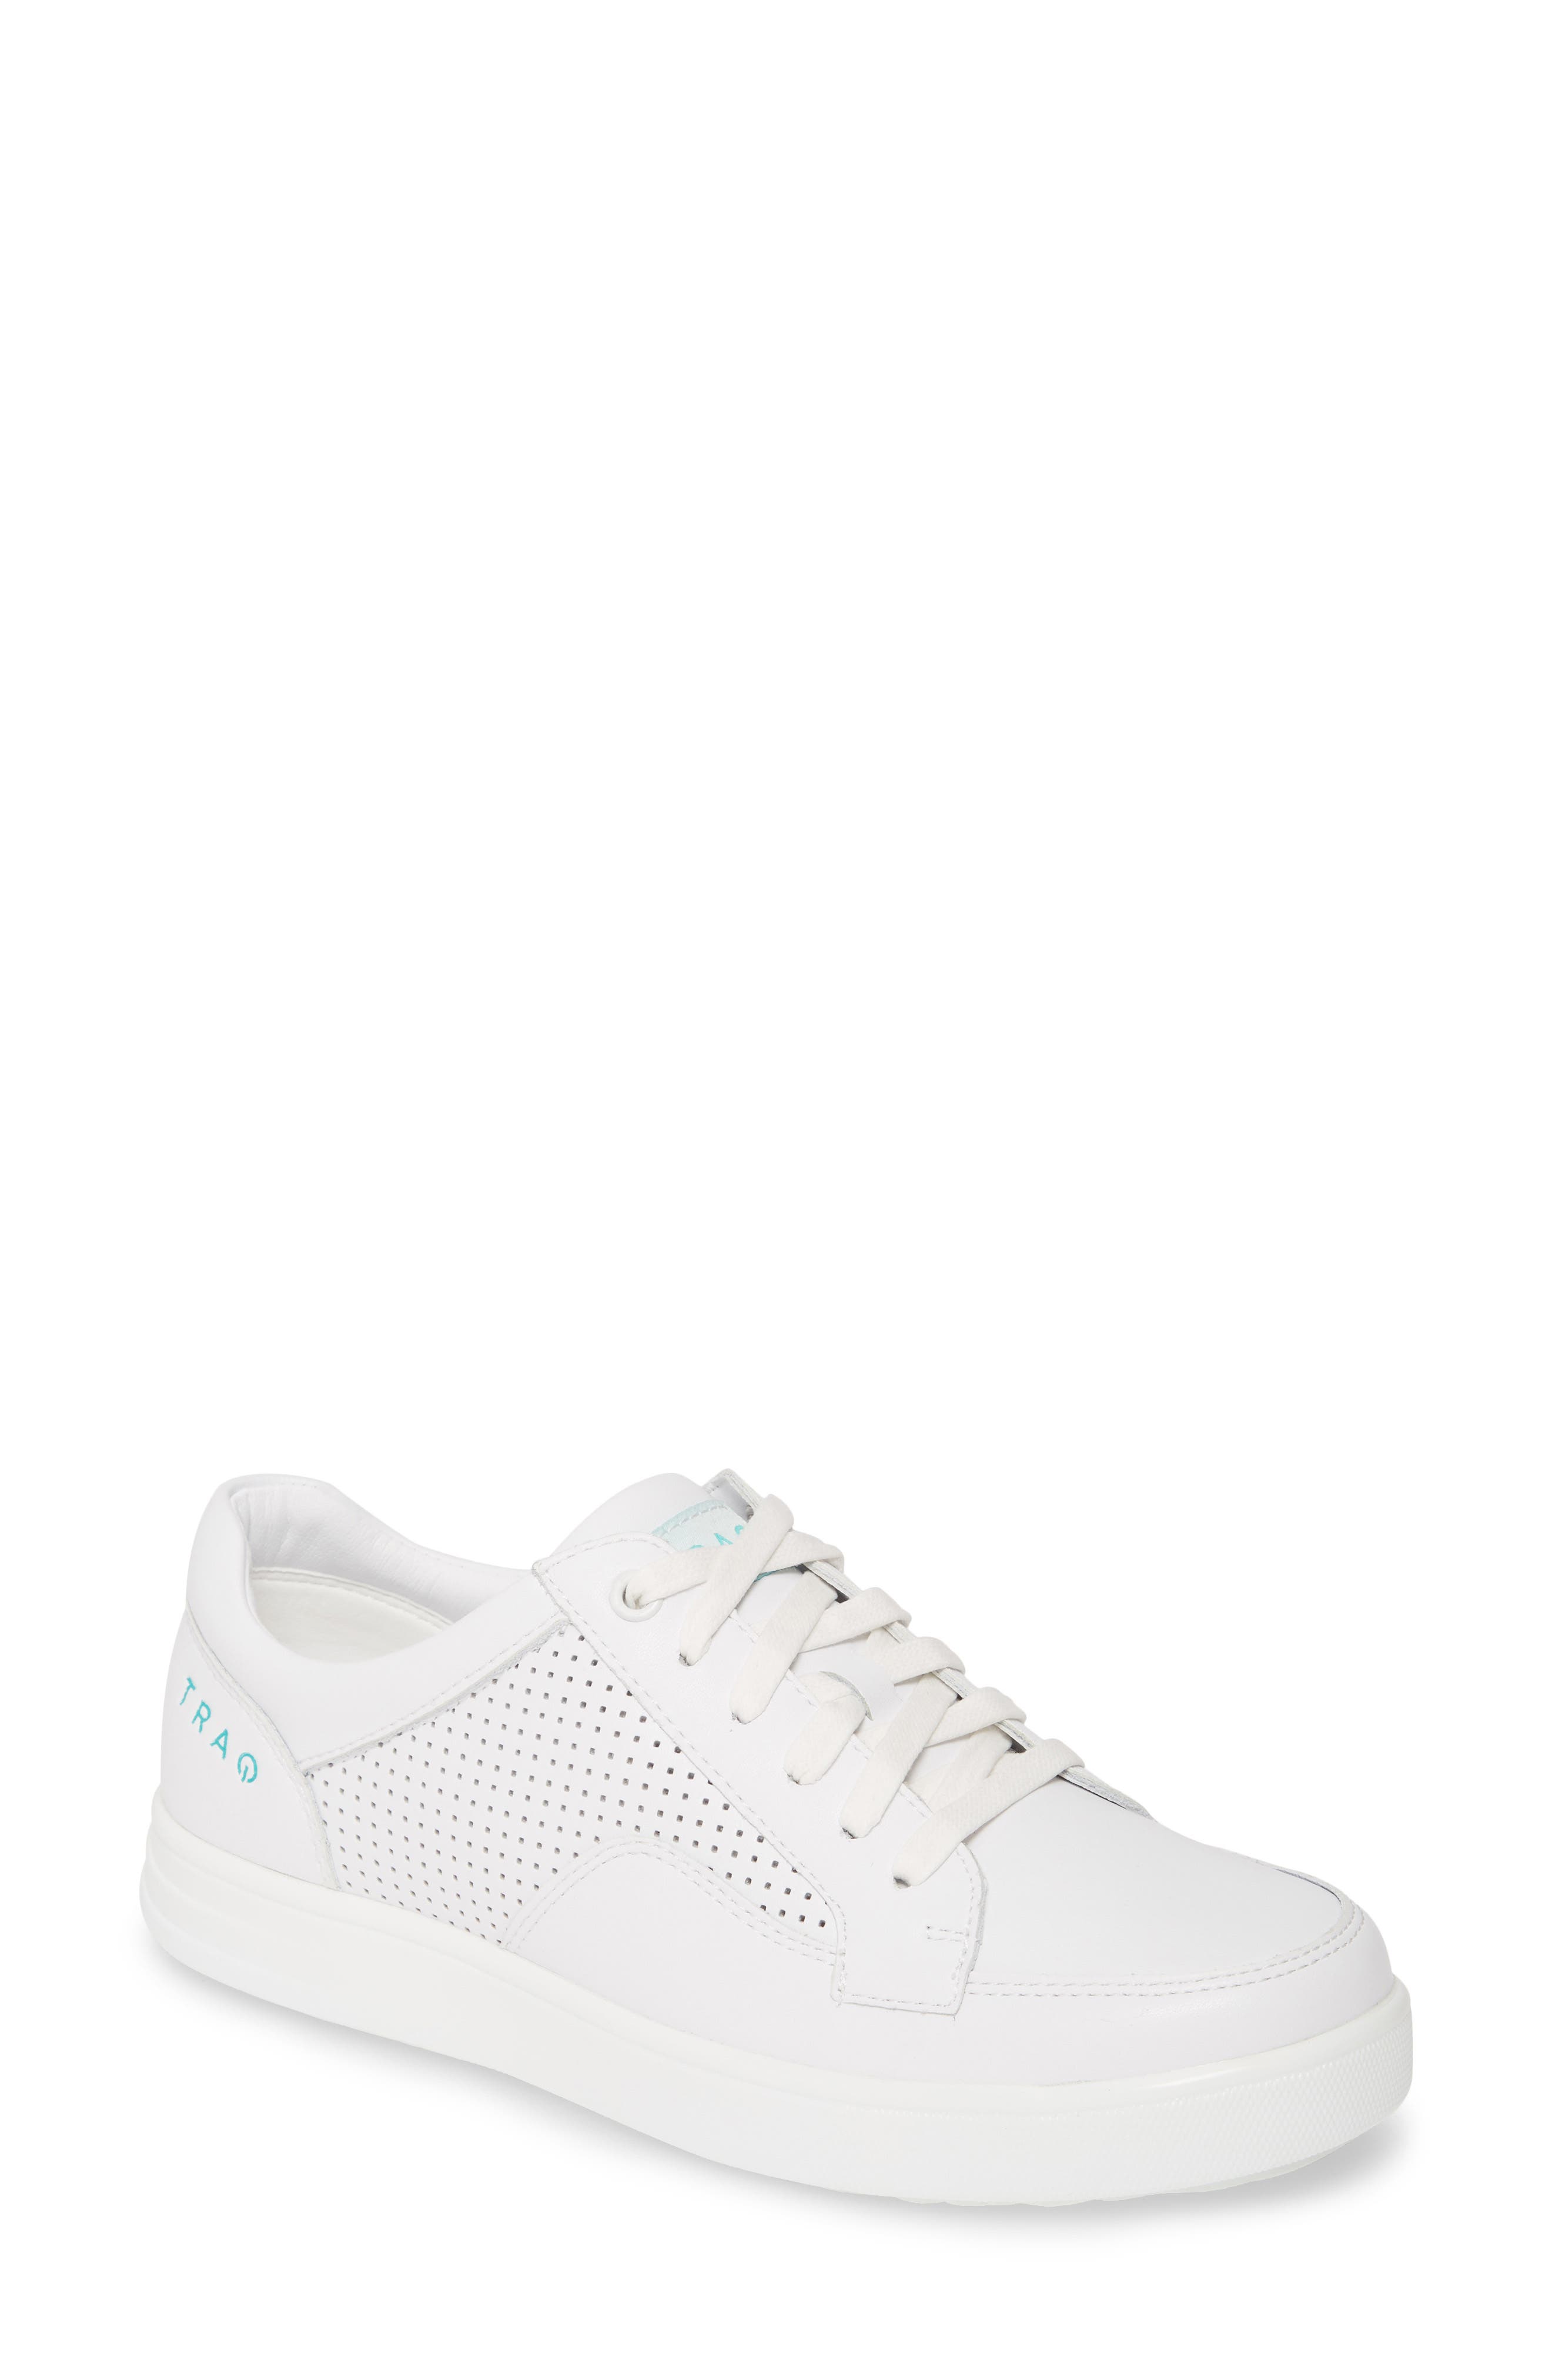 alegria white shoes